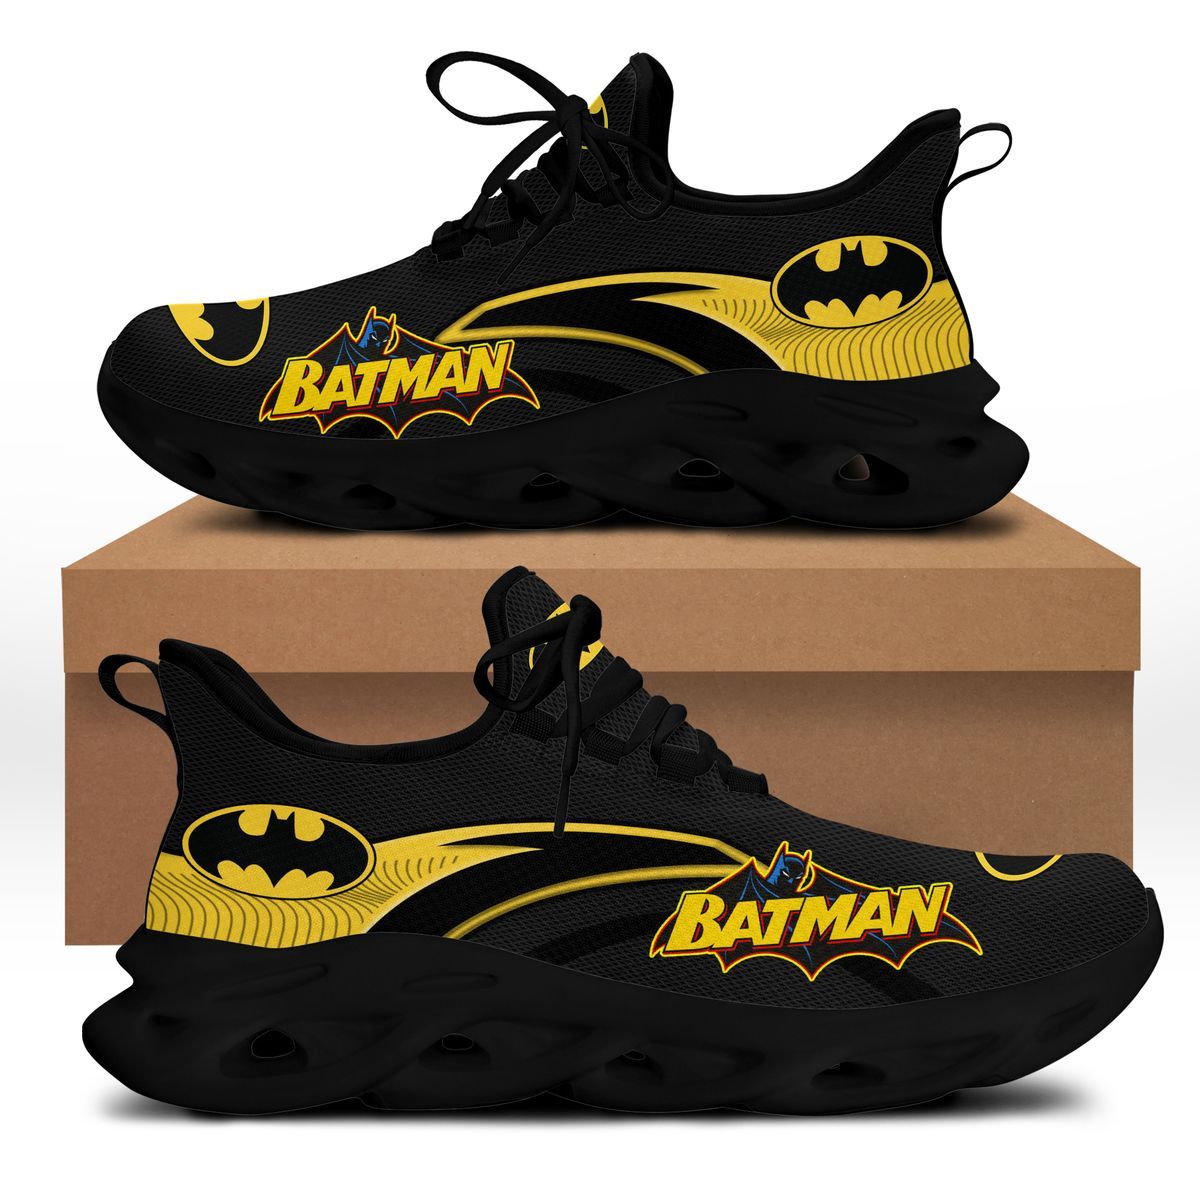 Batman Clunky Max soul shoes 18